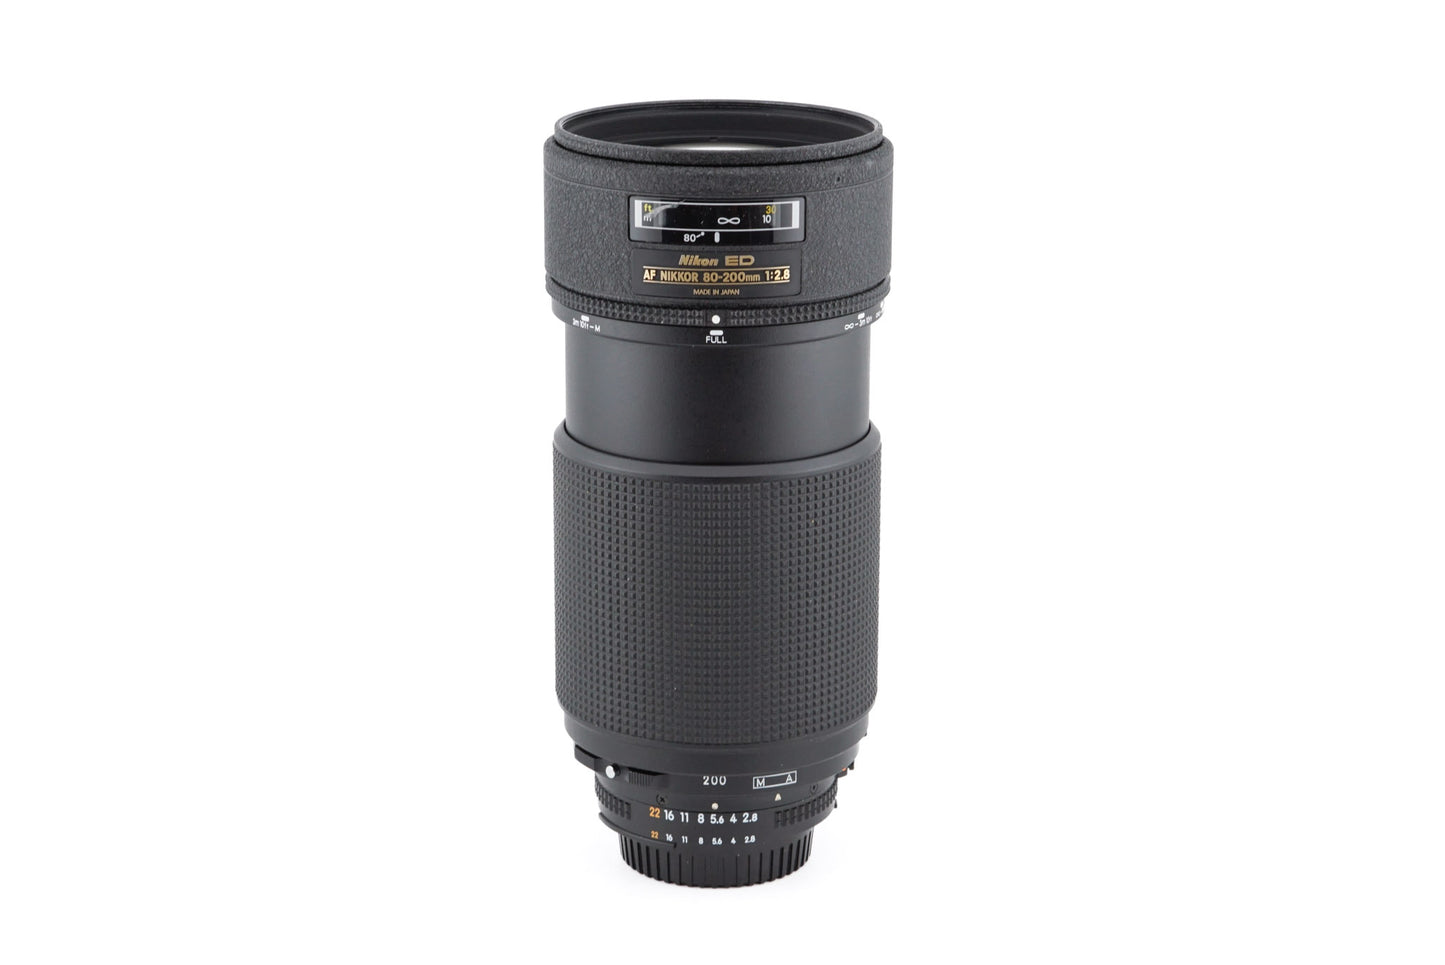 Nikon 80-200mm f2.8 ED AF Nikkor - Lens